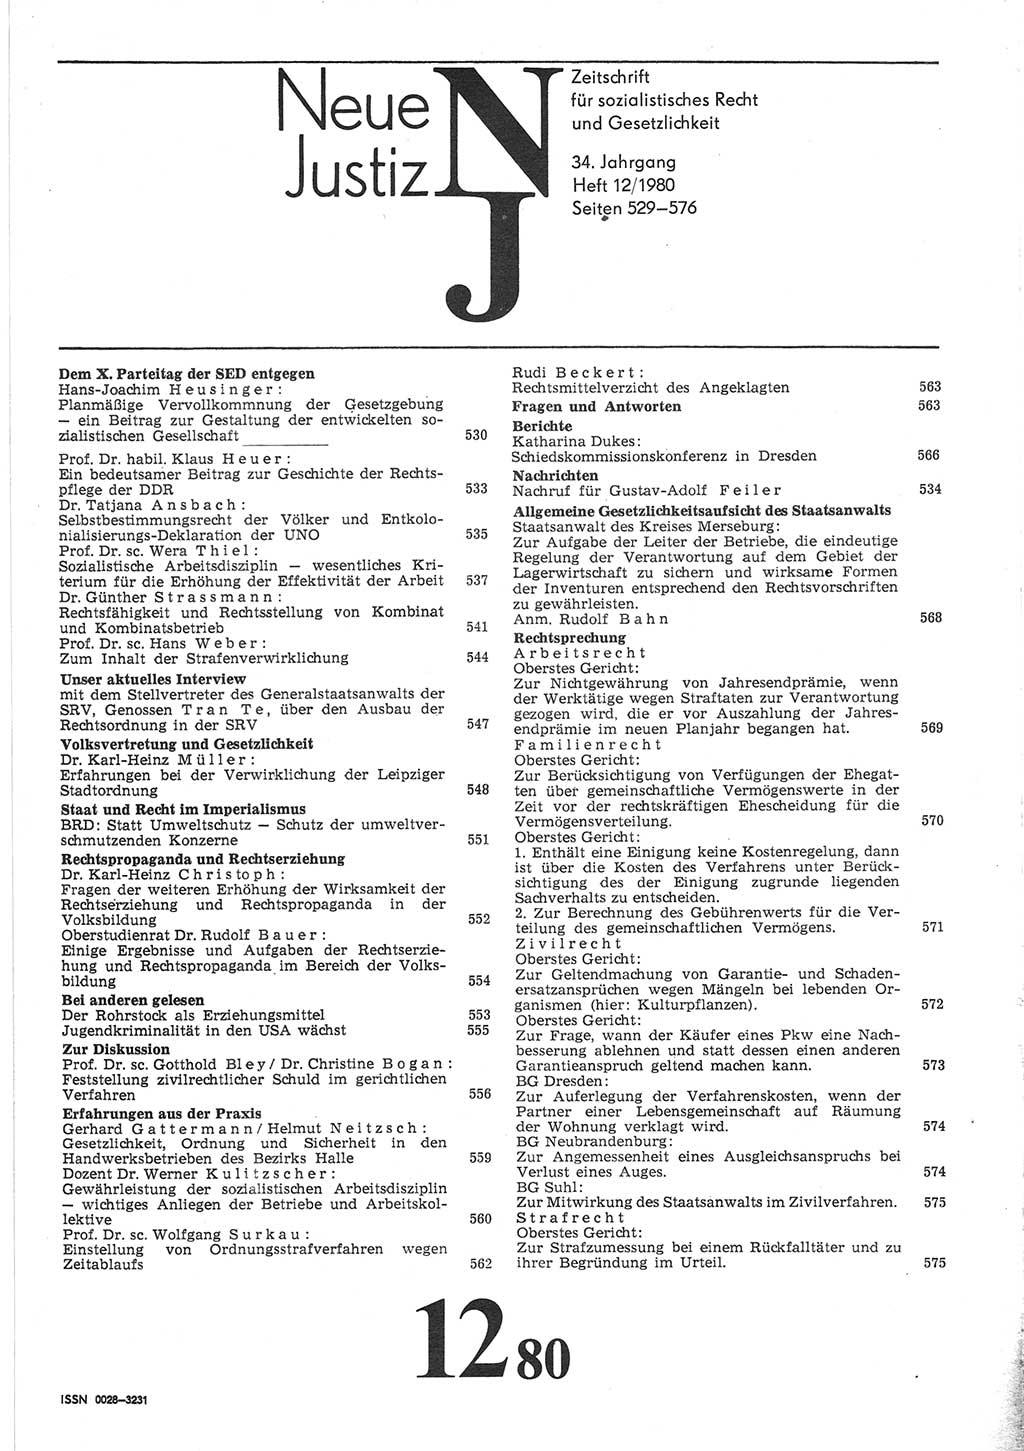 Neue Justiz (NJ), Zeitschrift für sozialistisches Recht und Gesetzlichkeit [Deutsche Demokratische Republik (DDR)], 34. Jahrgang 1980, Seite 529 (NJ DDR 1980, S. 529)